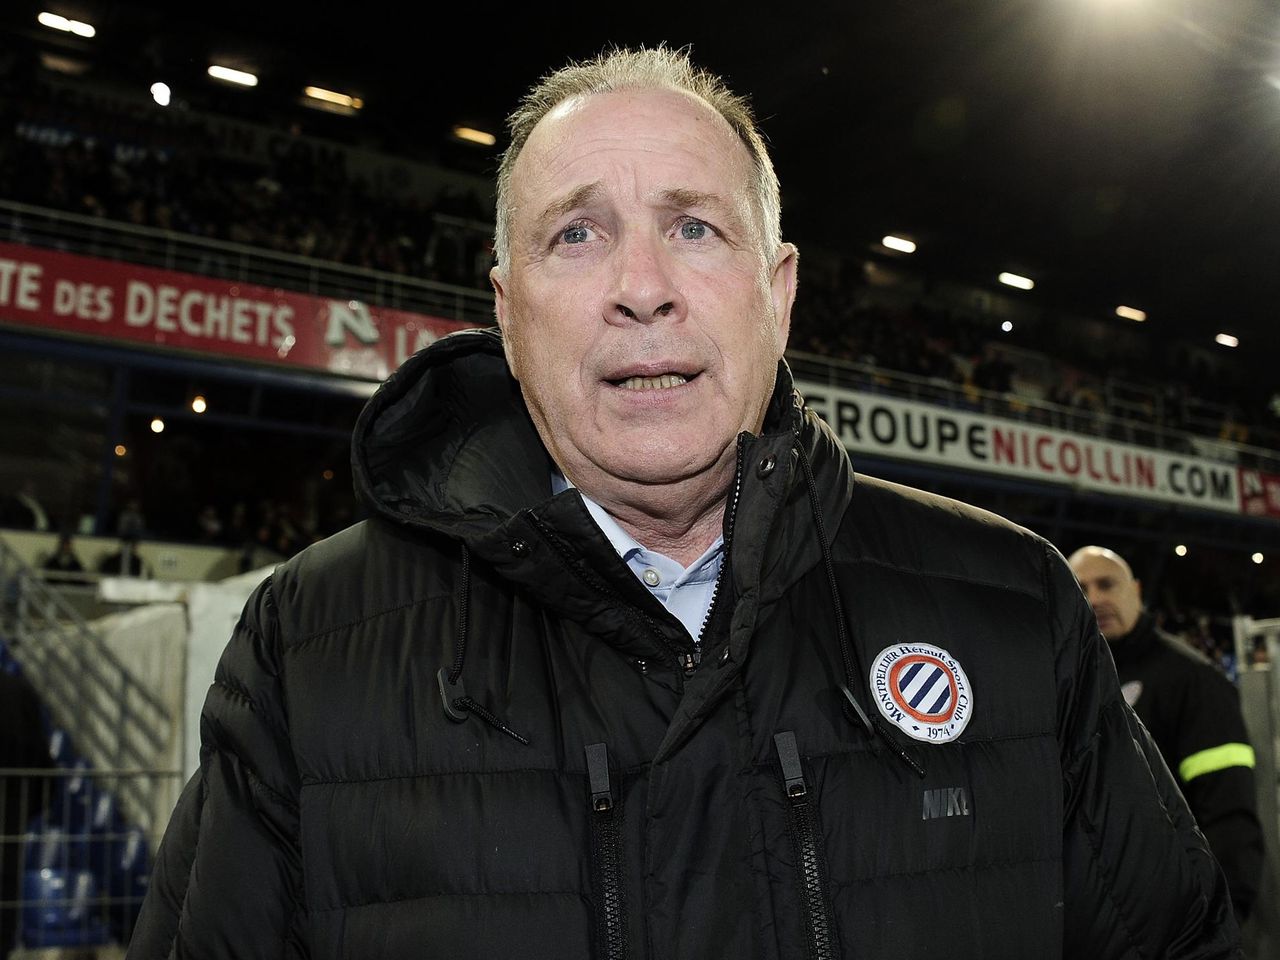 Narabar tidsskrift nærme sig Ligue 1 - MHSC : Jean Fernandez a démissionné de son poste d'entraineur -  Eurosport